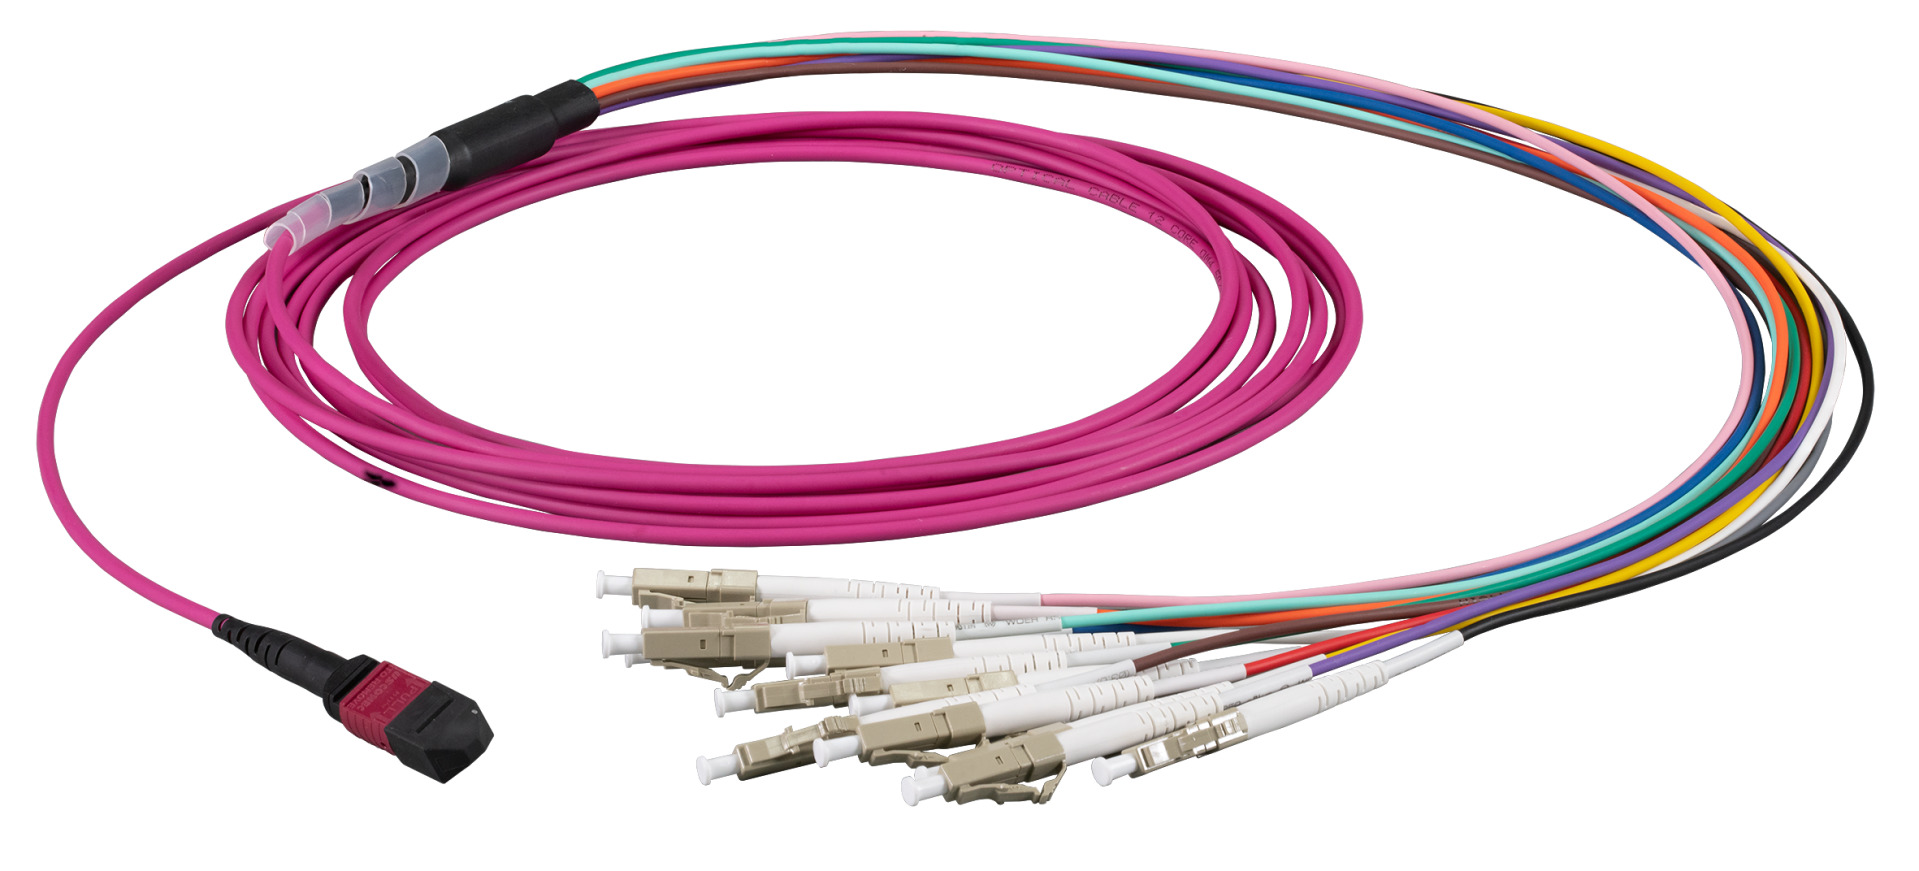 MTP®-F/LC 12-fiber patch cable OM4, LSZH erica-violet, 1m